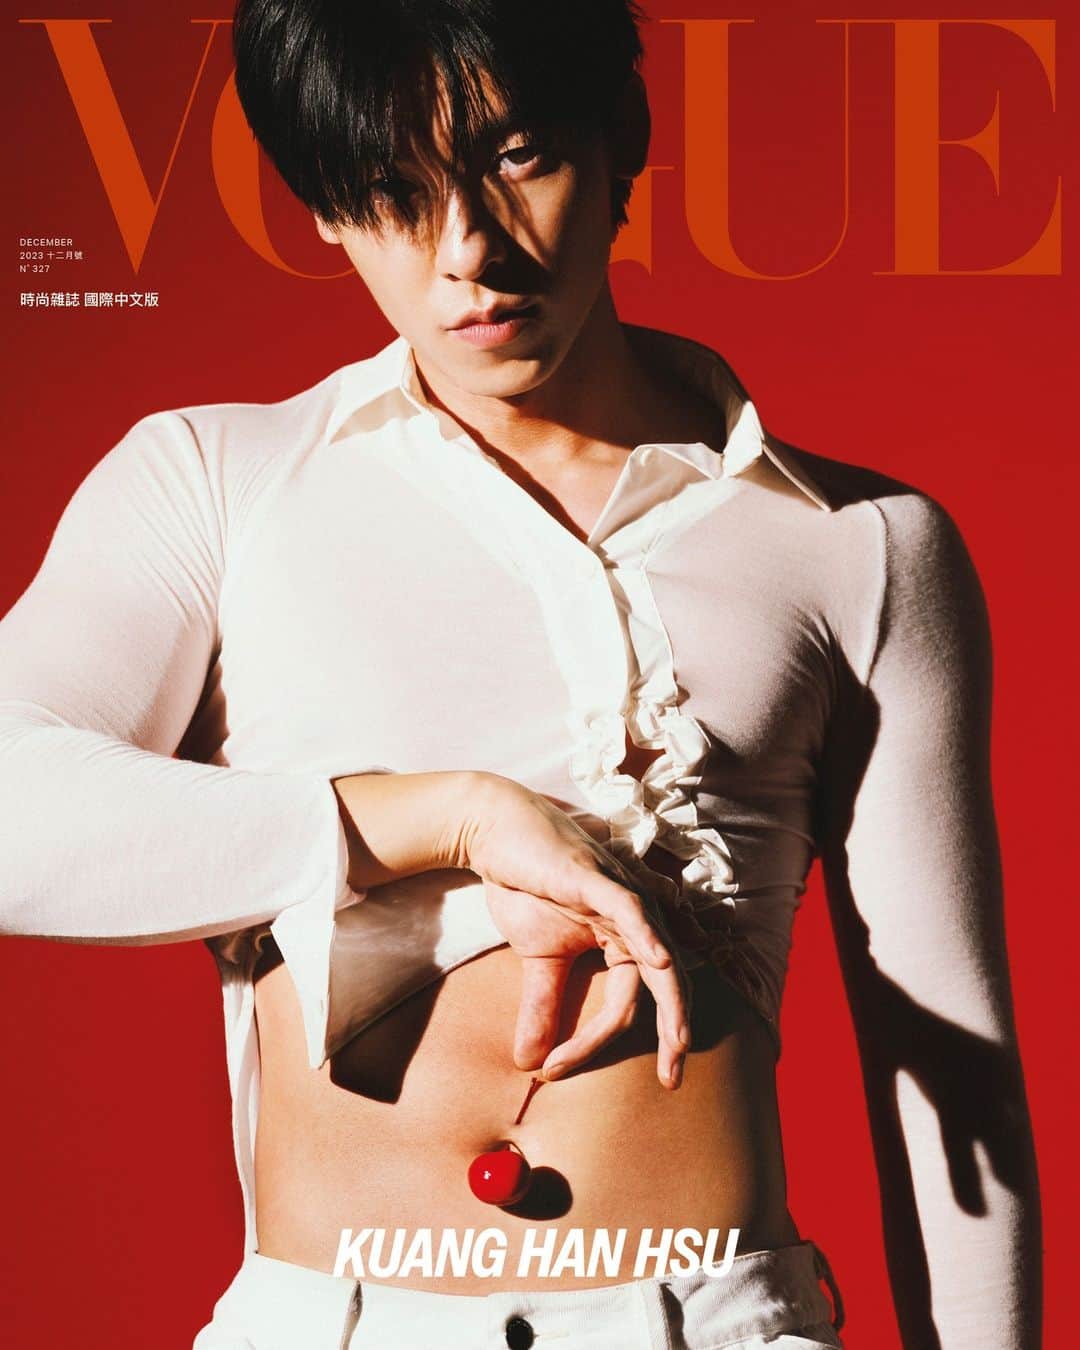 Vogue Taiwan Officialのインスタグラム：「#VogueCover 許光漢，在過去三年來已經成為了一種現象。網路上形容他的詞彙已經太多：國民男友、男神、少年感、性張力，甚至那句「許光漢生下來的性別就是老公」足以說明一切。一部《想見你》，讓許光漢的笑容被全亞洲看見，也讓他收穫了能夠匹敵韓國偶像的人氣。  外界看來，他正處高峰，稱他為光芒四射的新一代男神，但他明顯對這樣的稱號感到不甚自在。因為更多時候，他只是想做好演員這份工作。外界看他慢熟且神祕，但他只是務實低調，不戀棧名人光芒，默默堅持自己的本業，客氣且禮貌的做好分內的事。  「如今依舊覺得拍戲是一件很緊張的事情，但也是一件很快樂的事情，快樂跟痛苦並存，痛苦是開始，過程則是快樂。無論我拍了多少部作品，接演下一部戲的時候，還是會覺得自己是一張白紙，從零慢慢去摸索。」  本期封面故事全文請點 @voguetaiwan 首頁。  Talent: 許光漢 @kuanghanhsu APAC Editorial Director: Leslie Sun @sunles Photographer: Zhong Lin @zhonglin_ Features Director and Text: Nicole Lee @nymphlee Styling & Fashion Managing Editor: Chen Yu @ballballchiu Managing Fashion Editor: Travis Hung @t9avis  Talent Manager: Sylvie Yeh @lagerfeld  Makeup: 美少女工作室prettycool @prettycool_makeup / 高秀雯Kao Hsiu Wen Jasmine Kao @jasmine_kao1  Hair: Edmund Lin From Zoomhairstyling @zoom_edmund @zoomhairstyling Producer: Nelly Yang @nelly_yang_ Set Design: Tung Yu Ting @yuting.tung  VOGUE Taiwan 12月號雜誌：12月1日起，Vogue Shop、博客來、誠品線上、7-11 及各大連鎖書店正式上架  #VOGUEDECISSUE #VogueTaiwan #Vogue12月號 #許光漢 #kuanghanhsu #허광한」